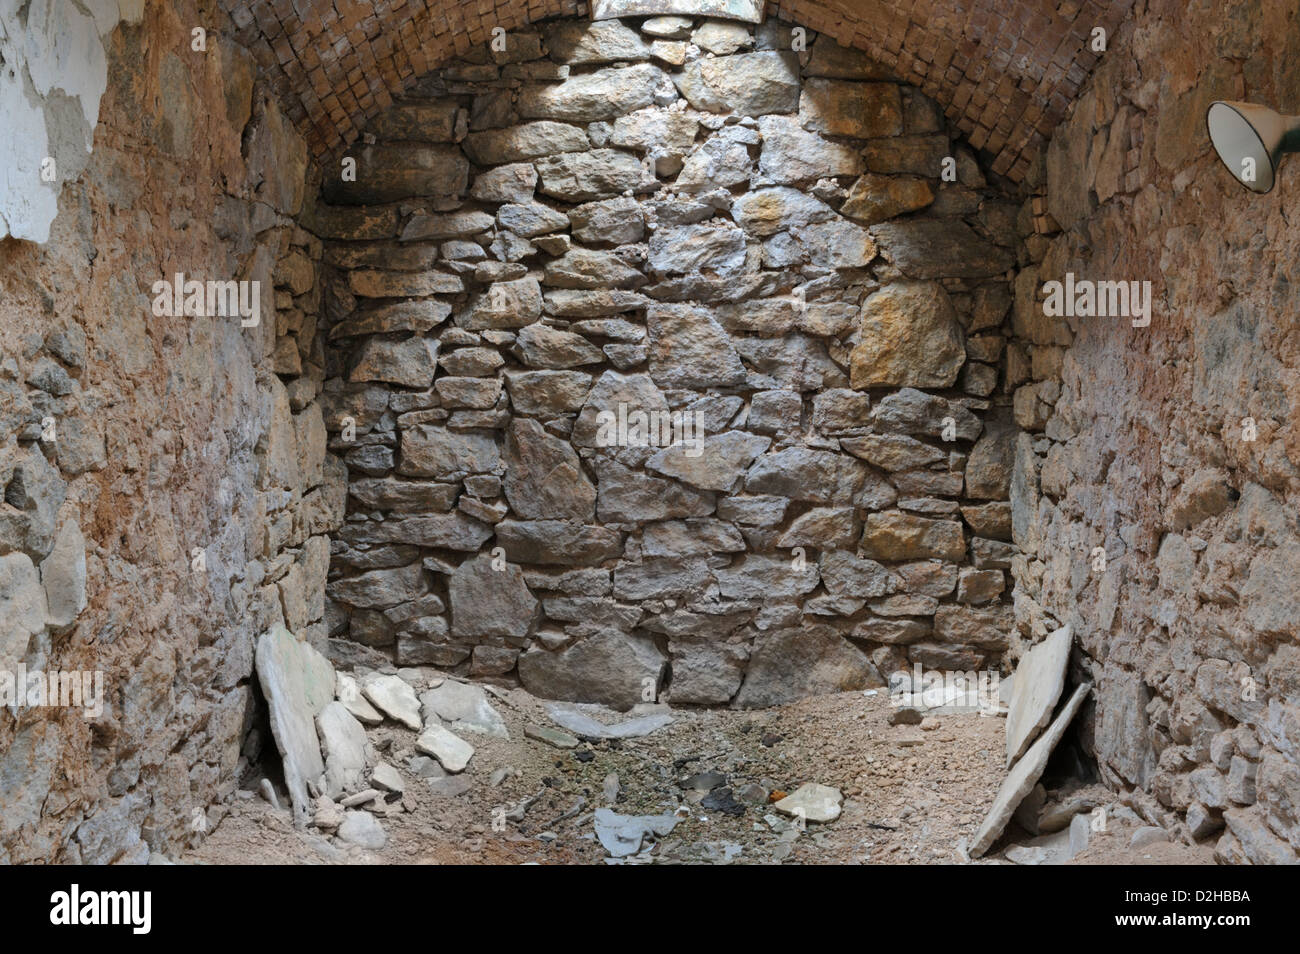 Celda de prisión pared de roca de piedra natural con lucernario superior, abandono y deterioro de la Penitenciaría del Estado del Este. Foto de stock